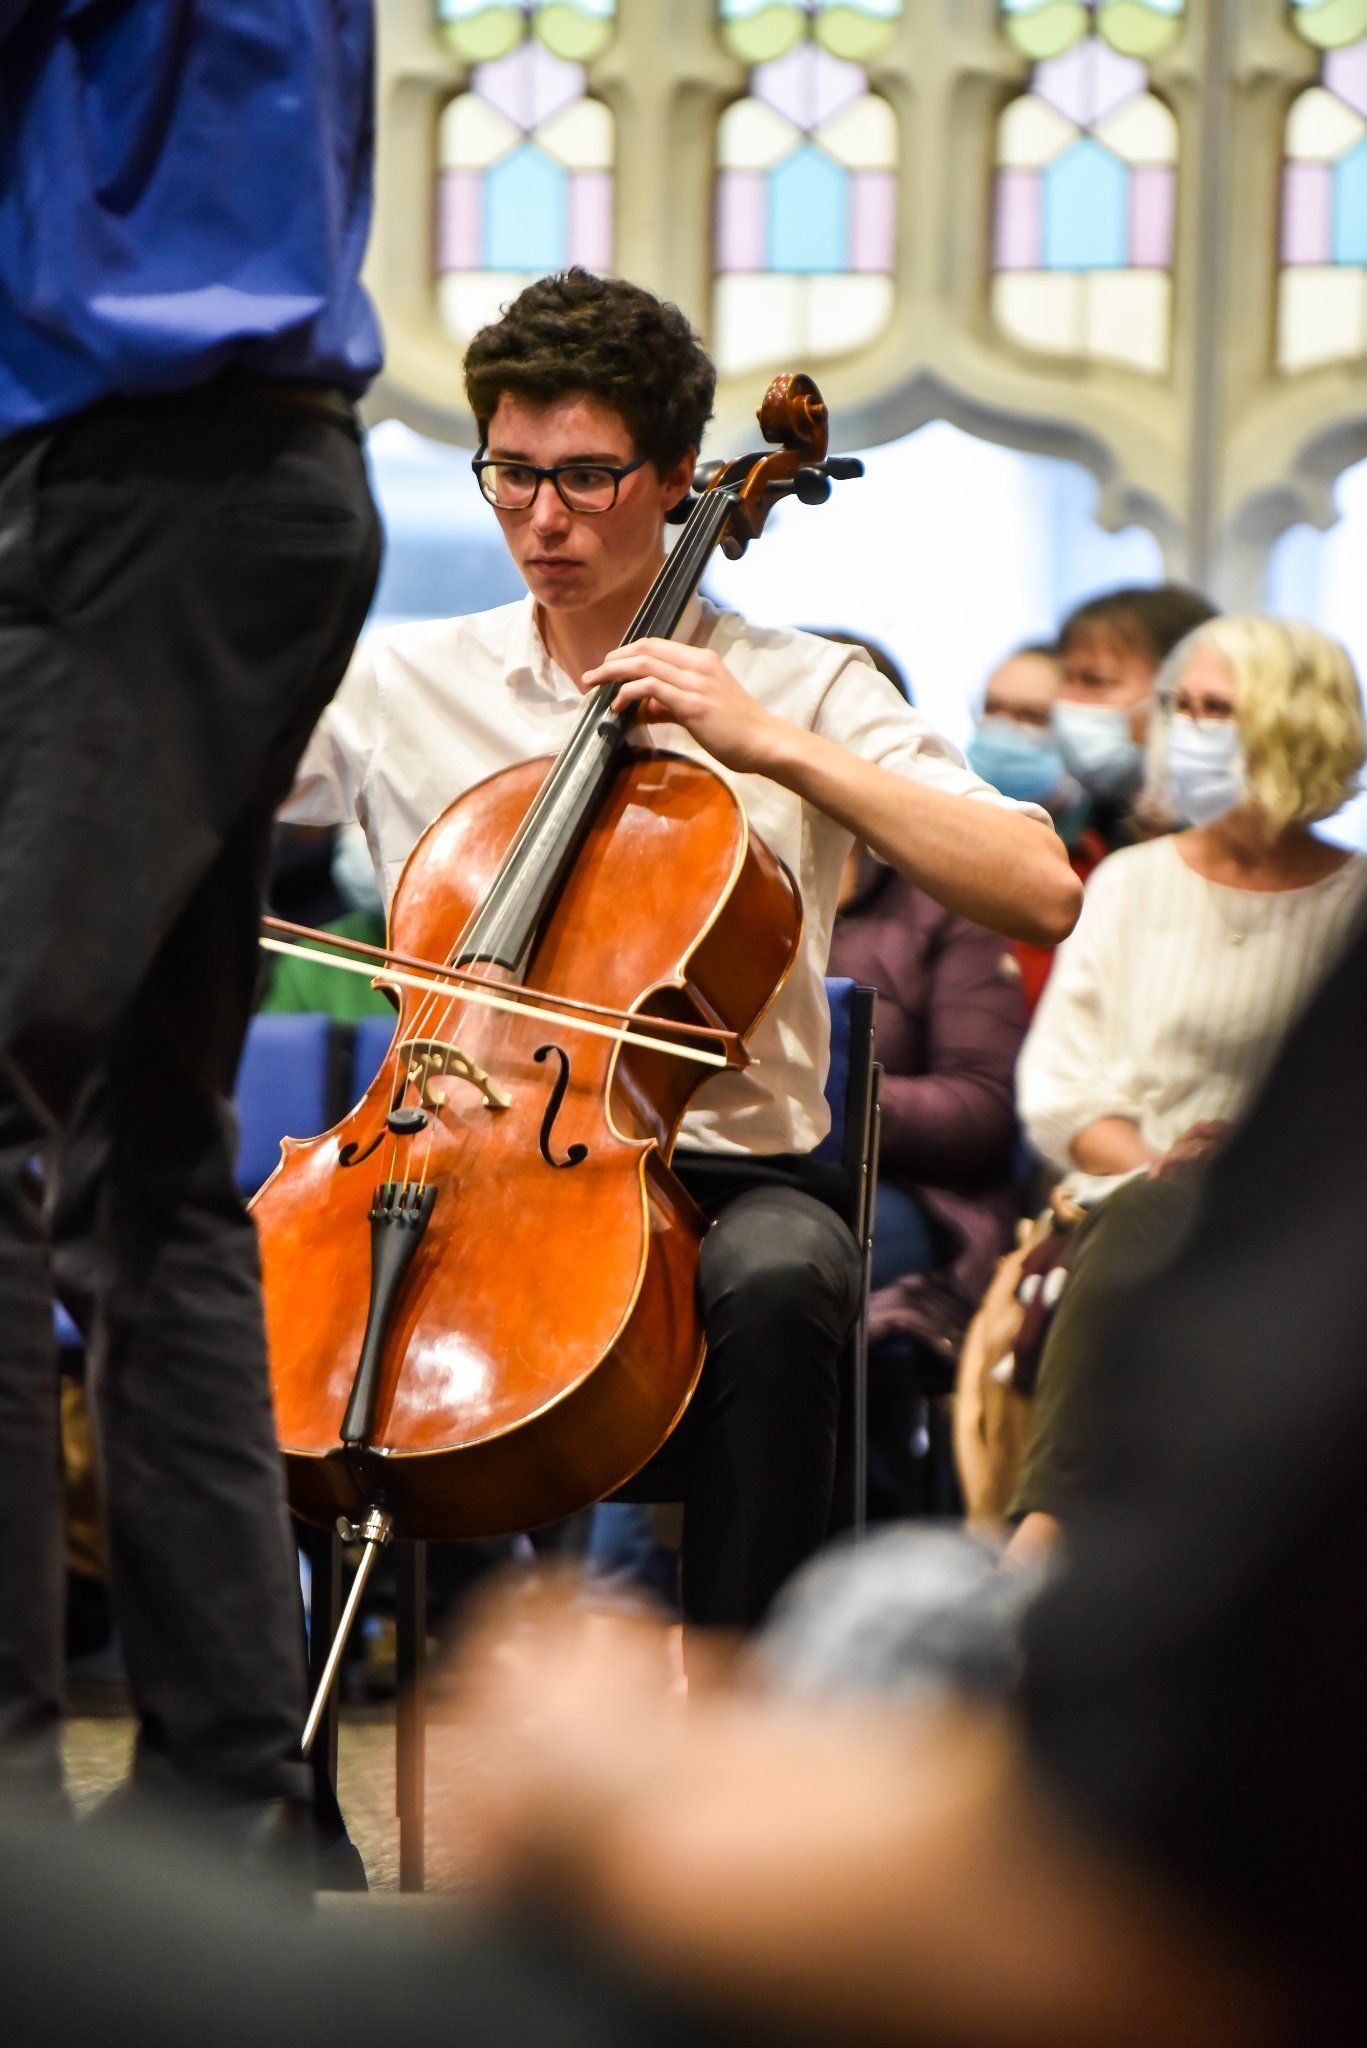 Cellist Boudewijn Keenan. Photo: Chris Sullivan